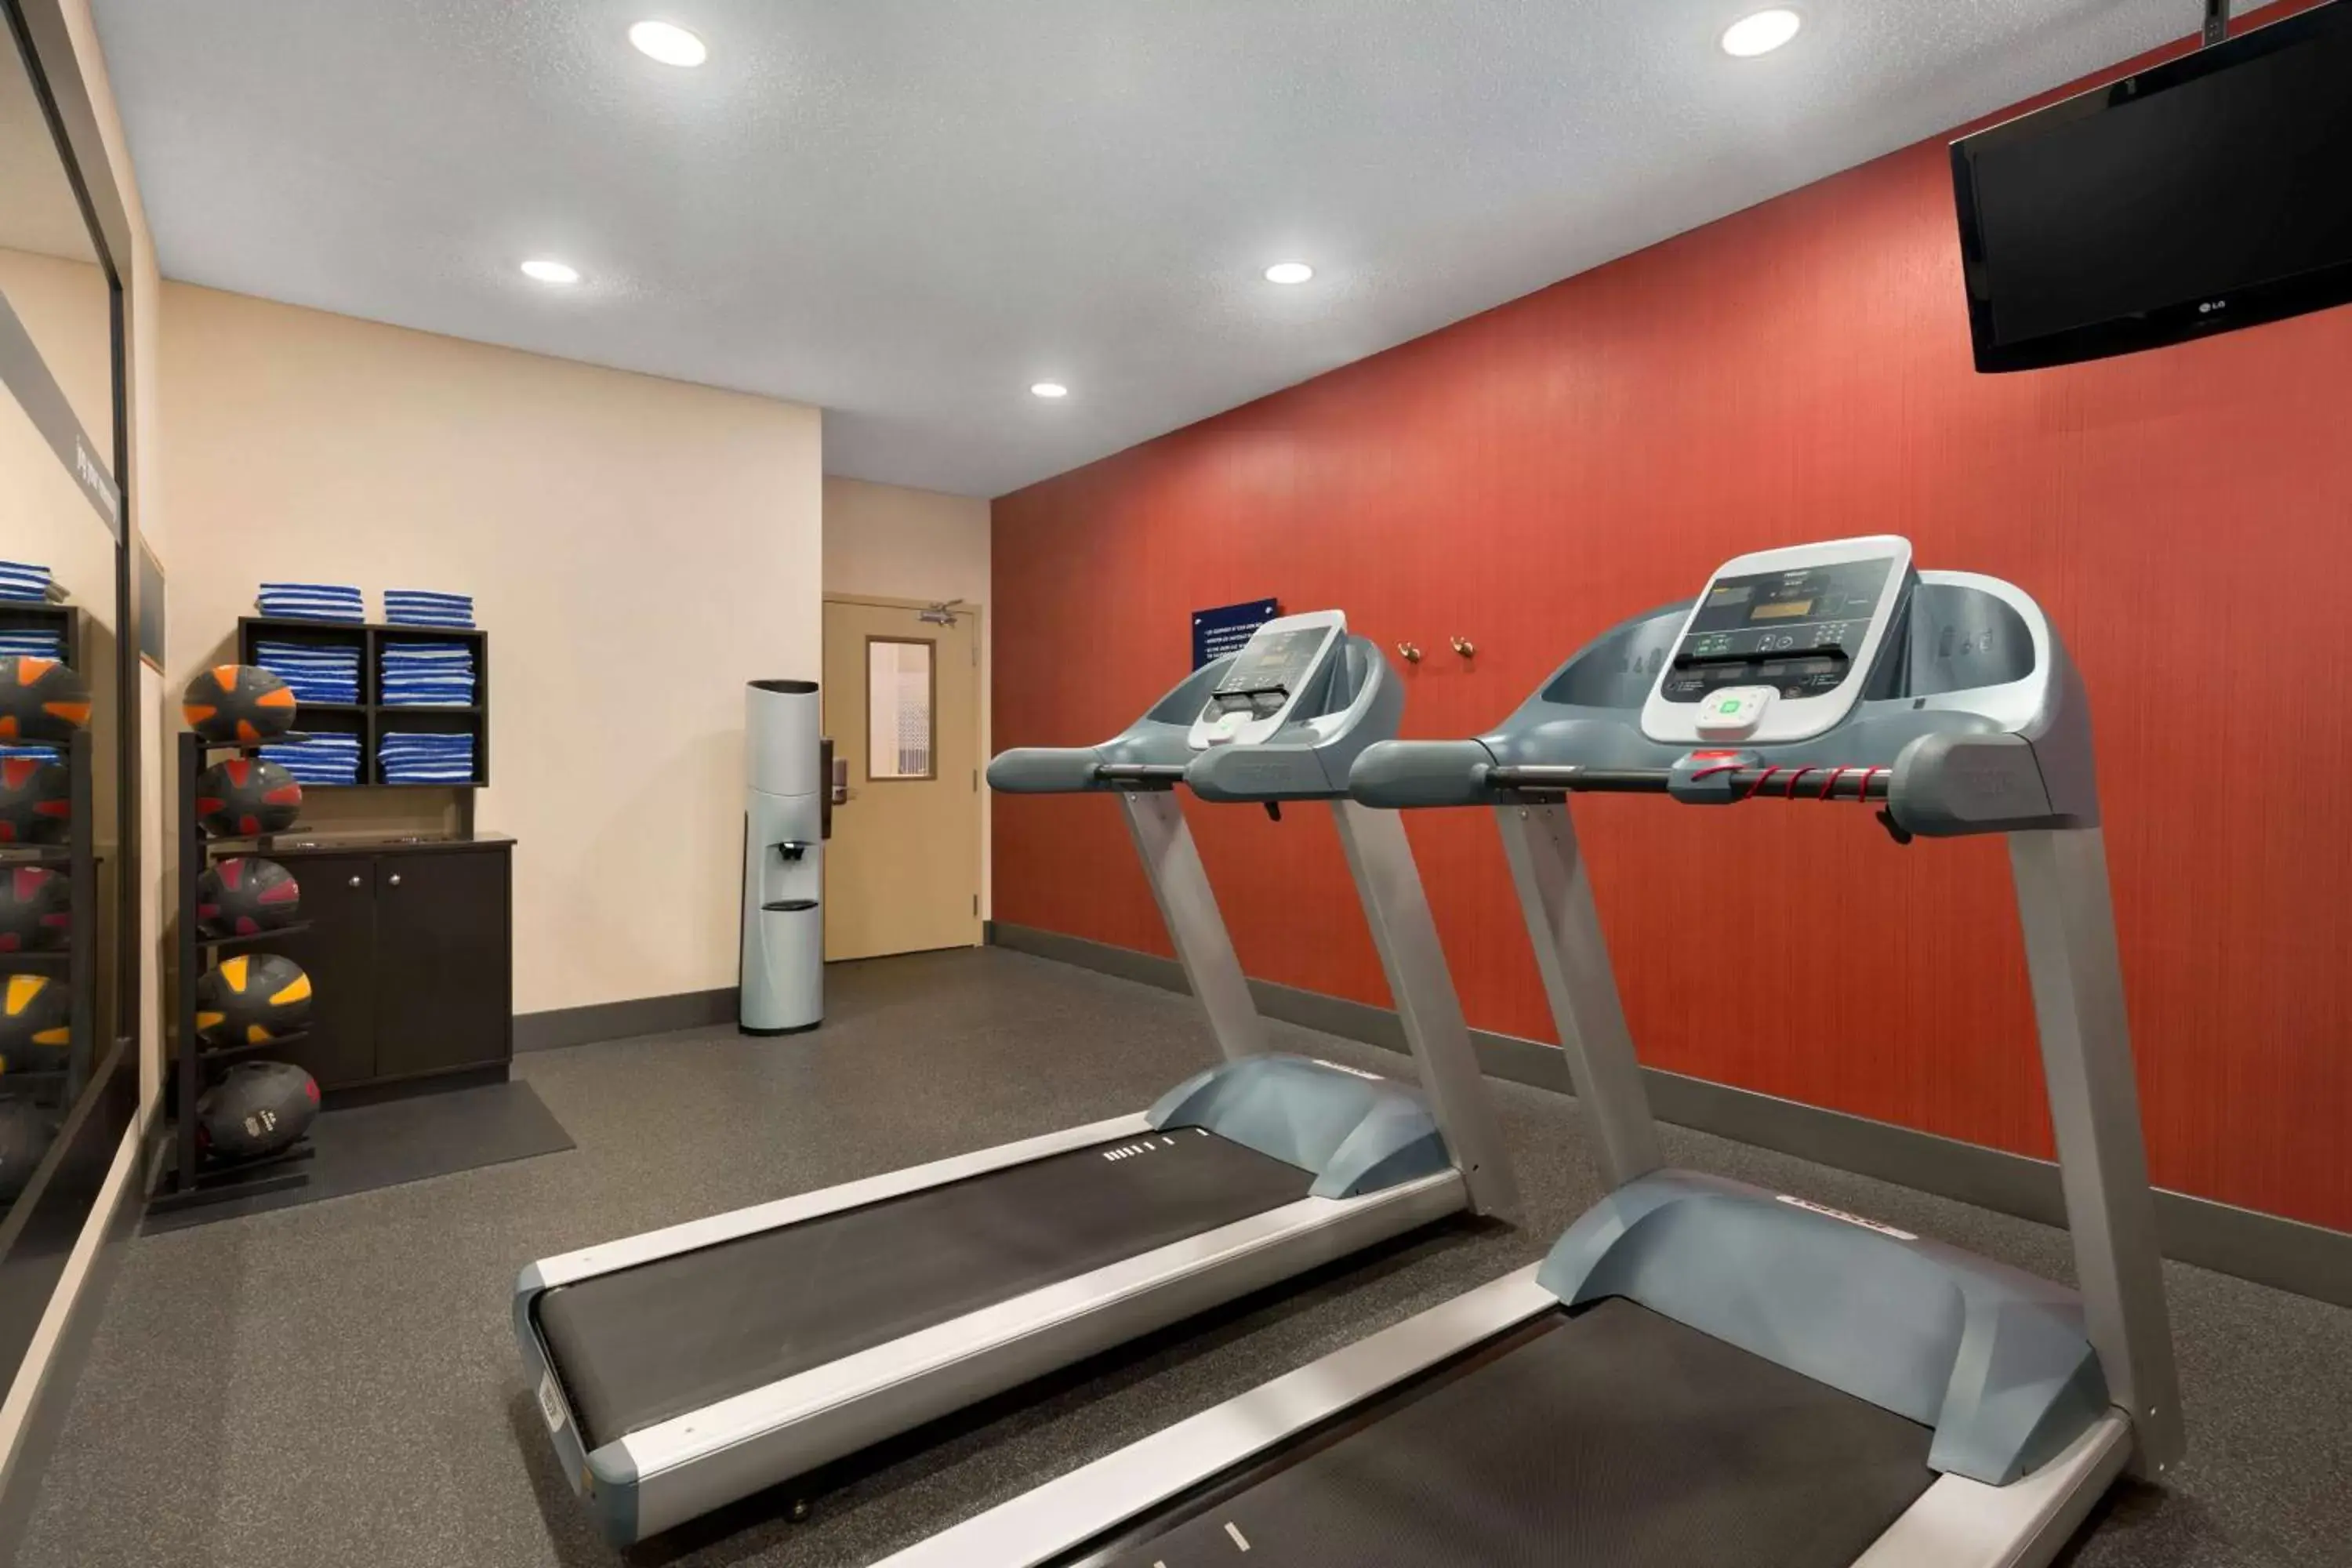 Fitness centre/facilities, Fitness Center/Facilities in Hampton Inn Minneapolis-Burnsville